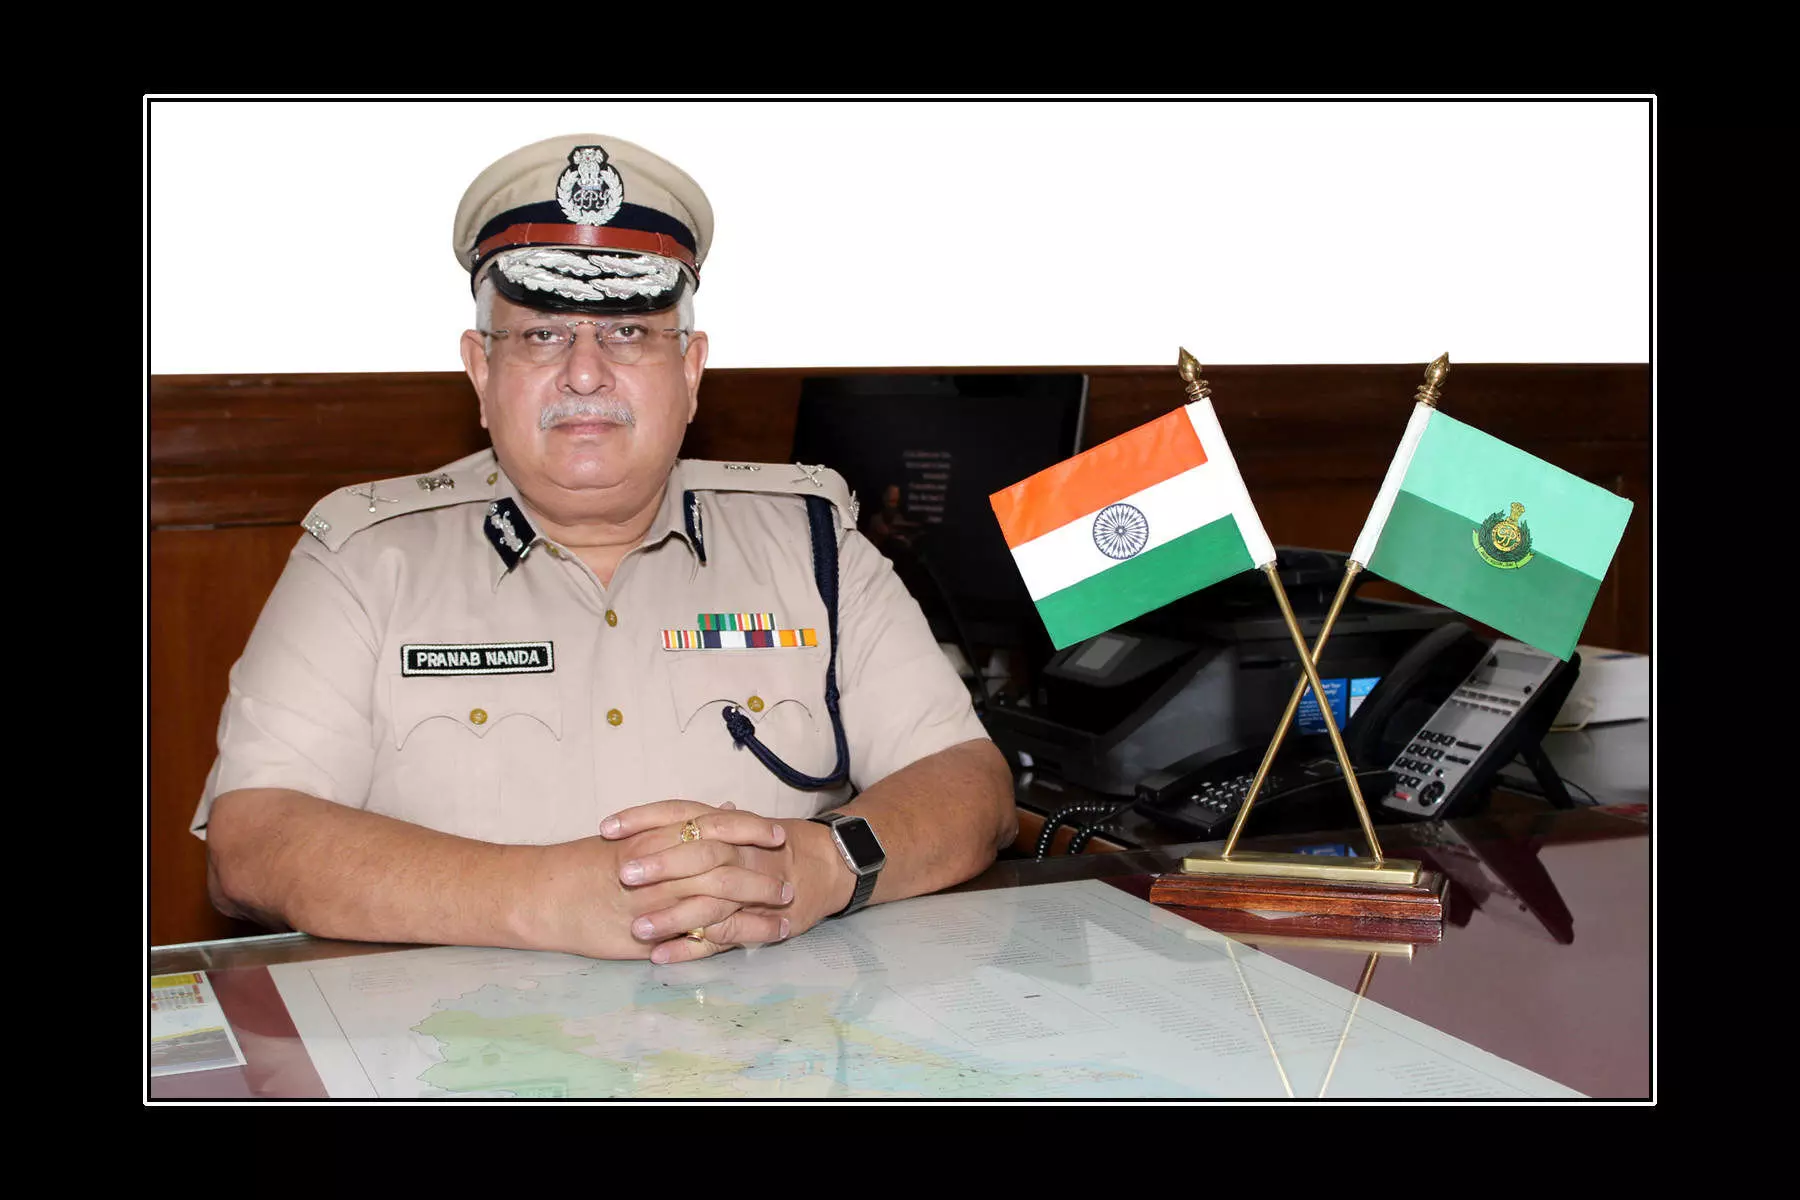 गोवा के पुलिस महानिदेशक (DGP) प्रणब नंदा का दिल्ली में निधन